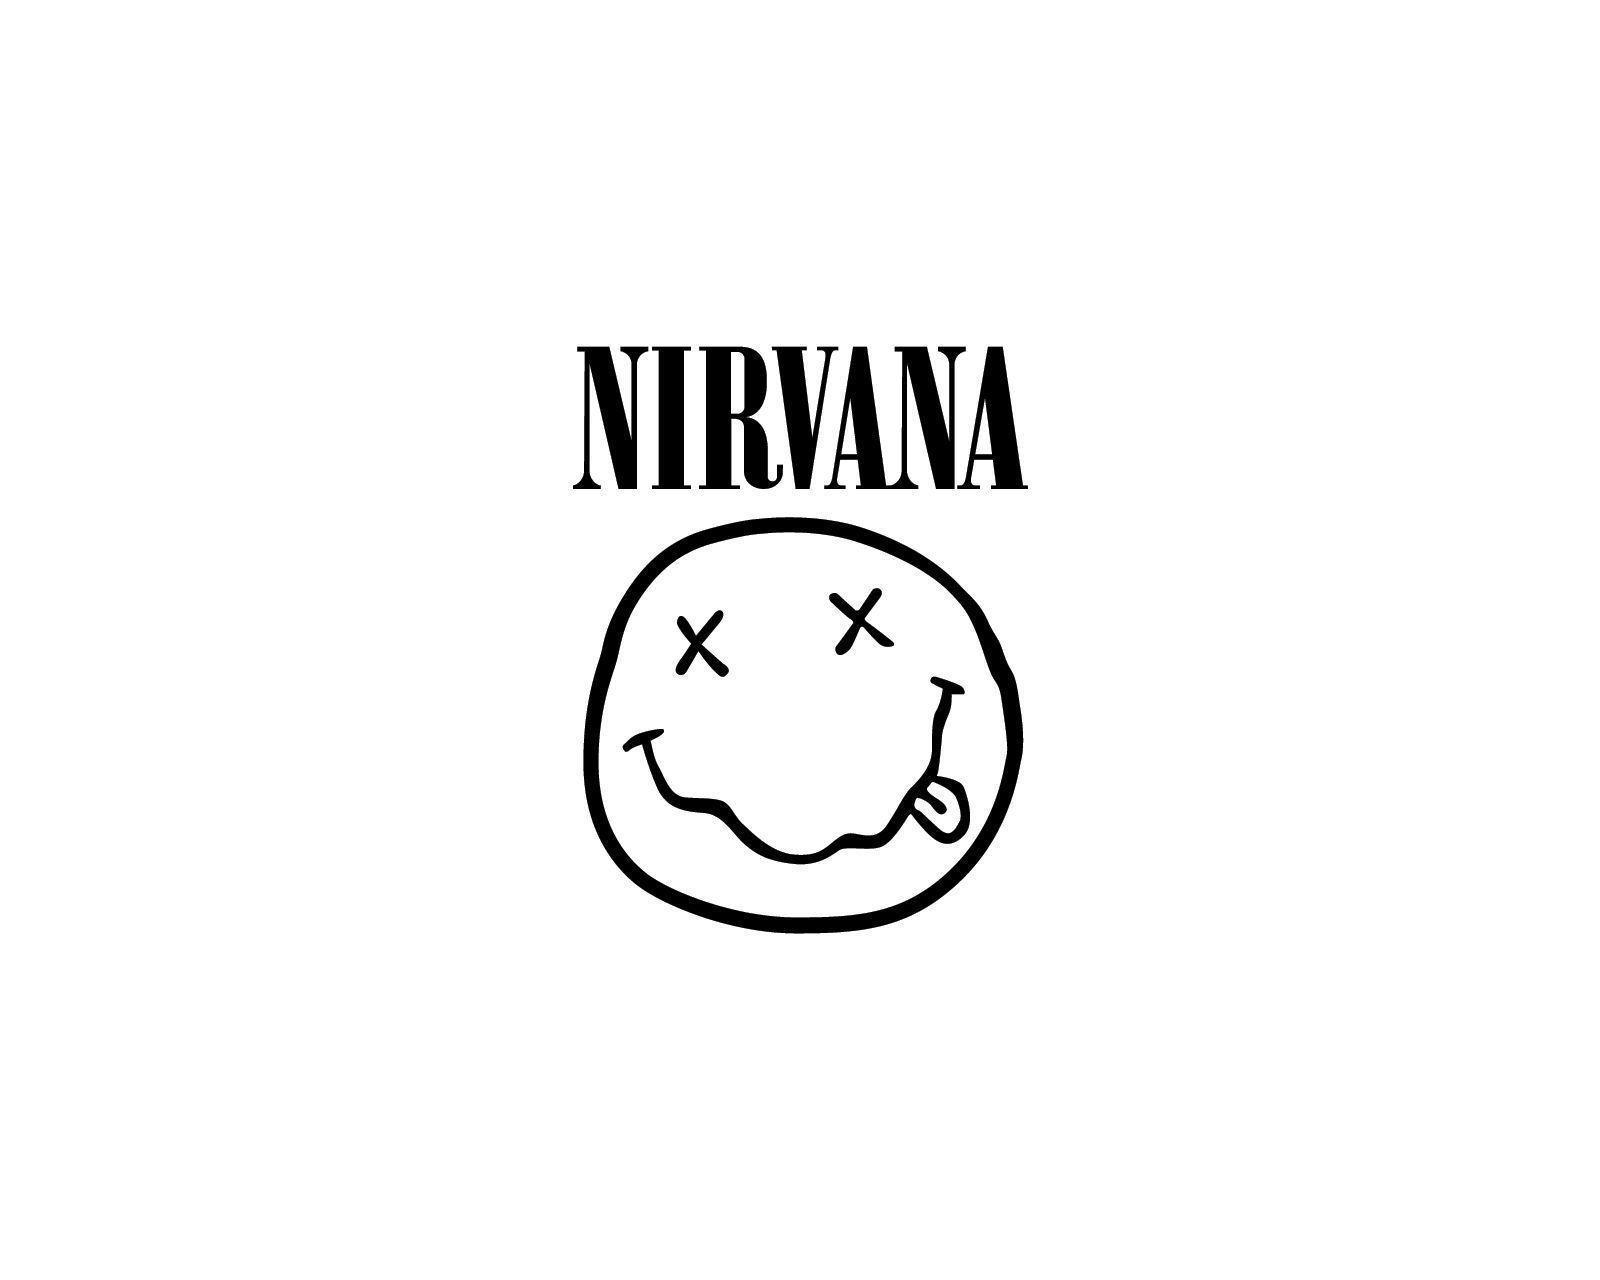 Nirvana logo. Band logos band logos, metal bands logos